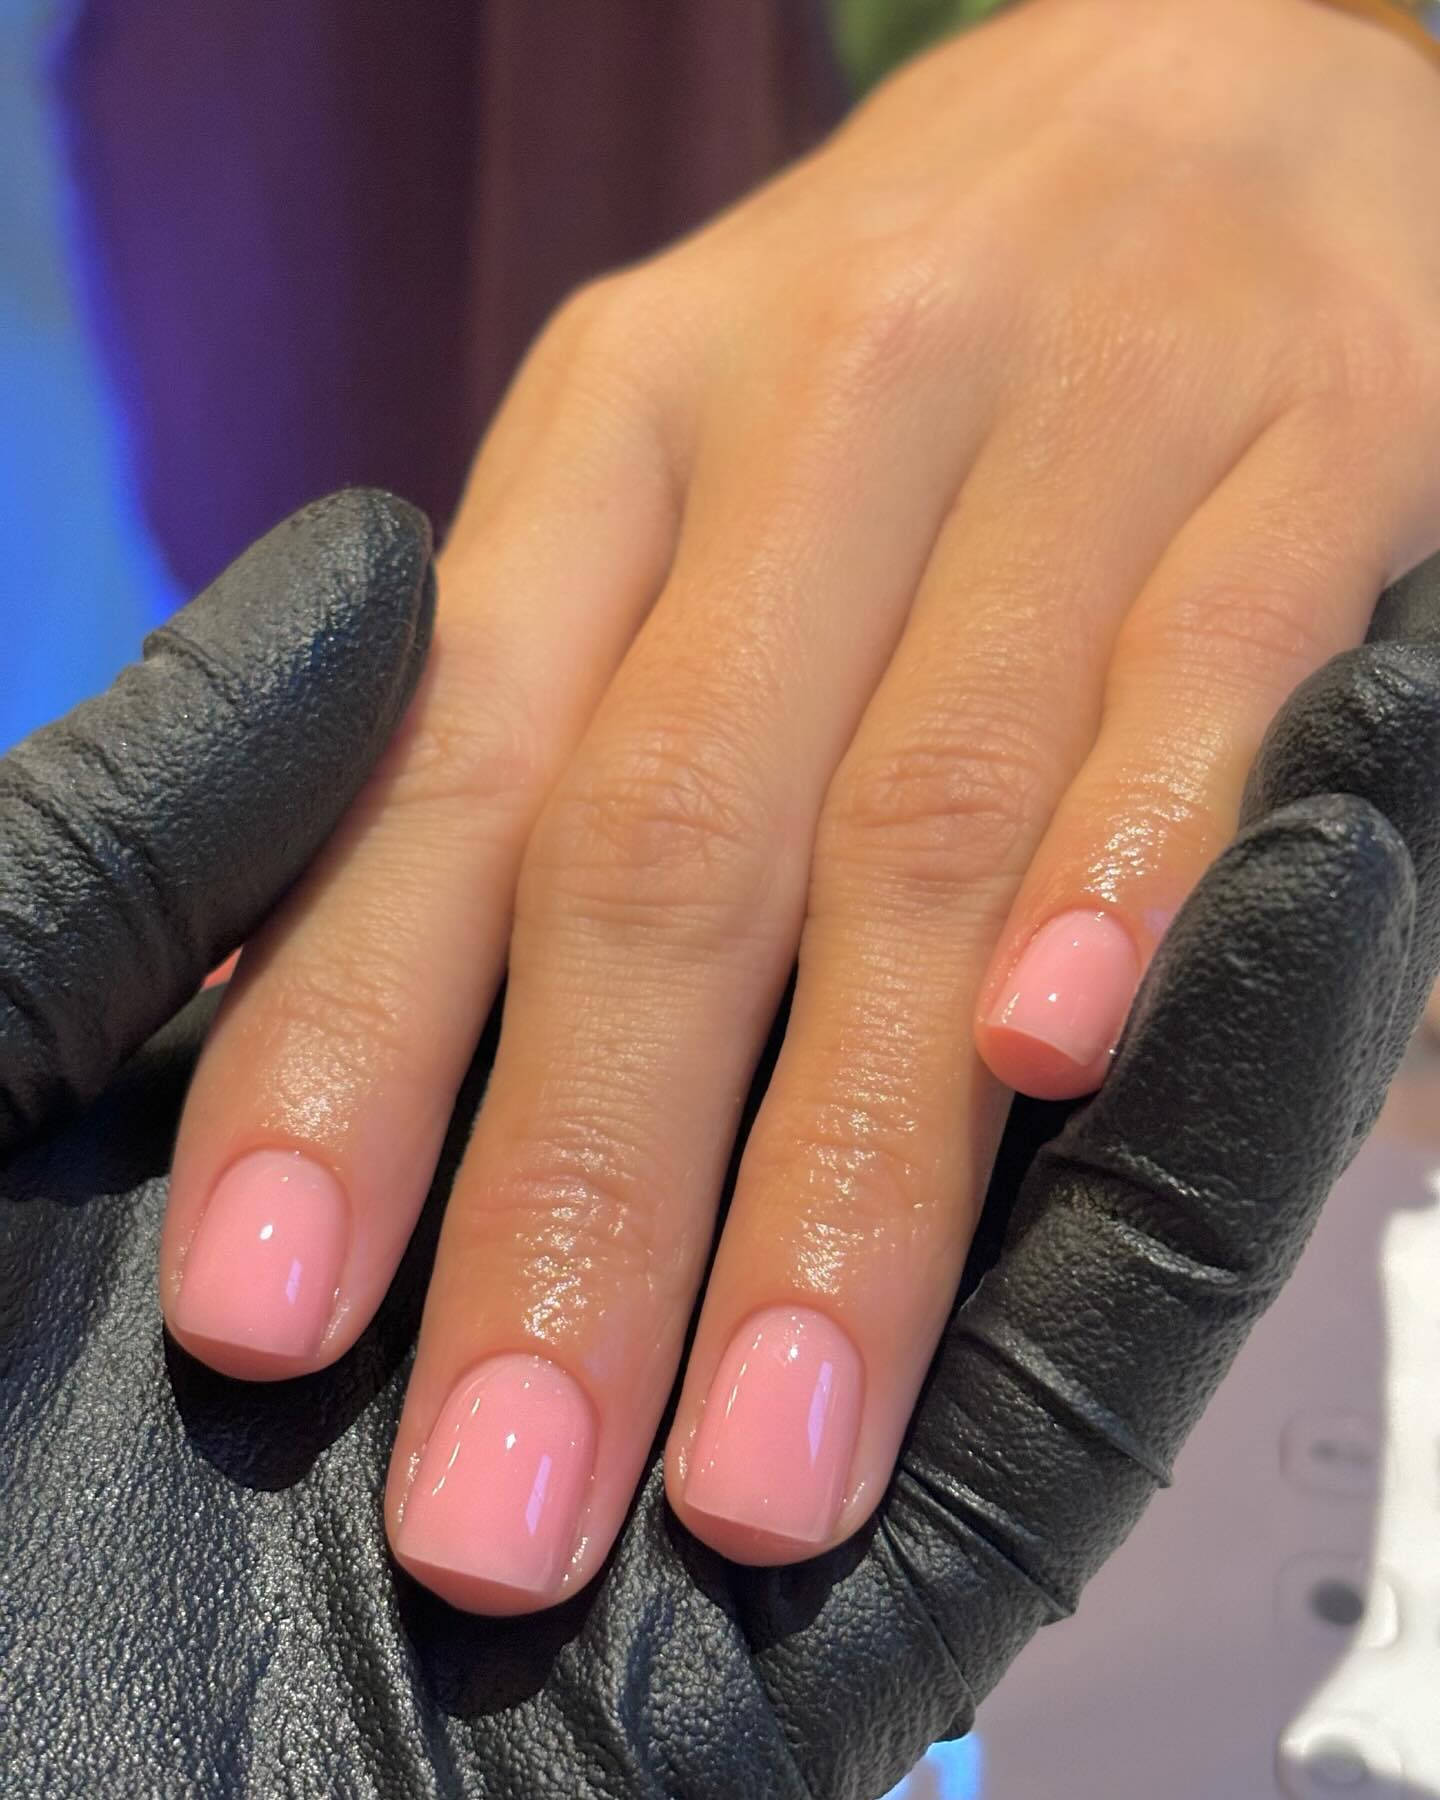 @harrietwestmoreland sheer pink manicure